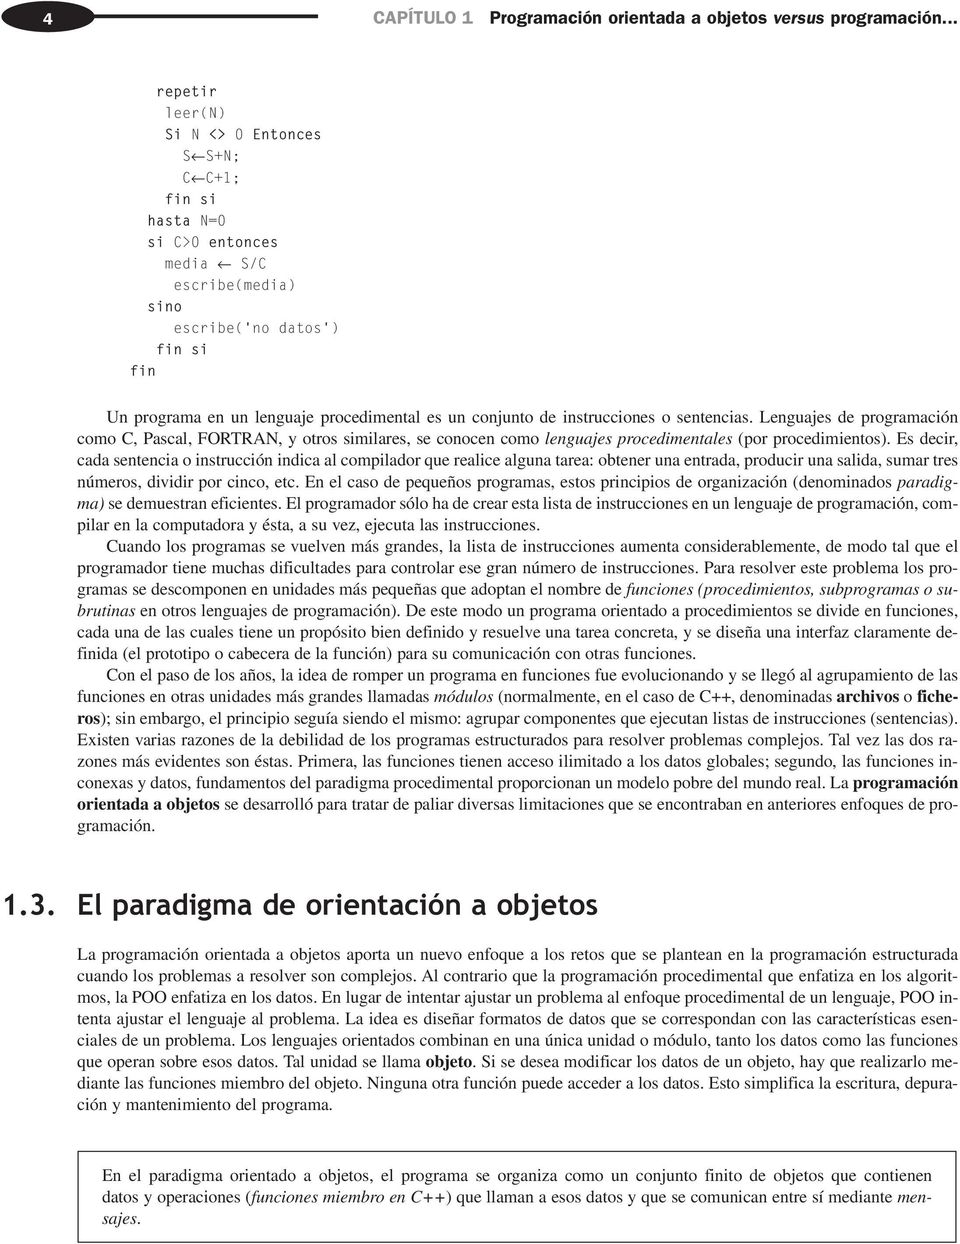 instrucciones o sentencias. Lenguajes de programación como C, Pascal, FORTRAN, y otros similares, se conocen como lenguajes procedimentales (por procedimientos).